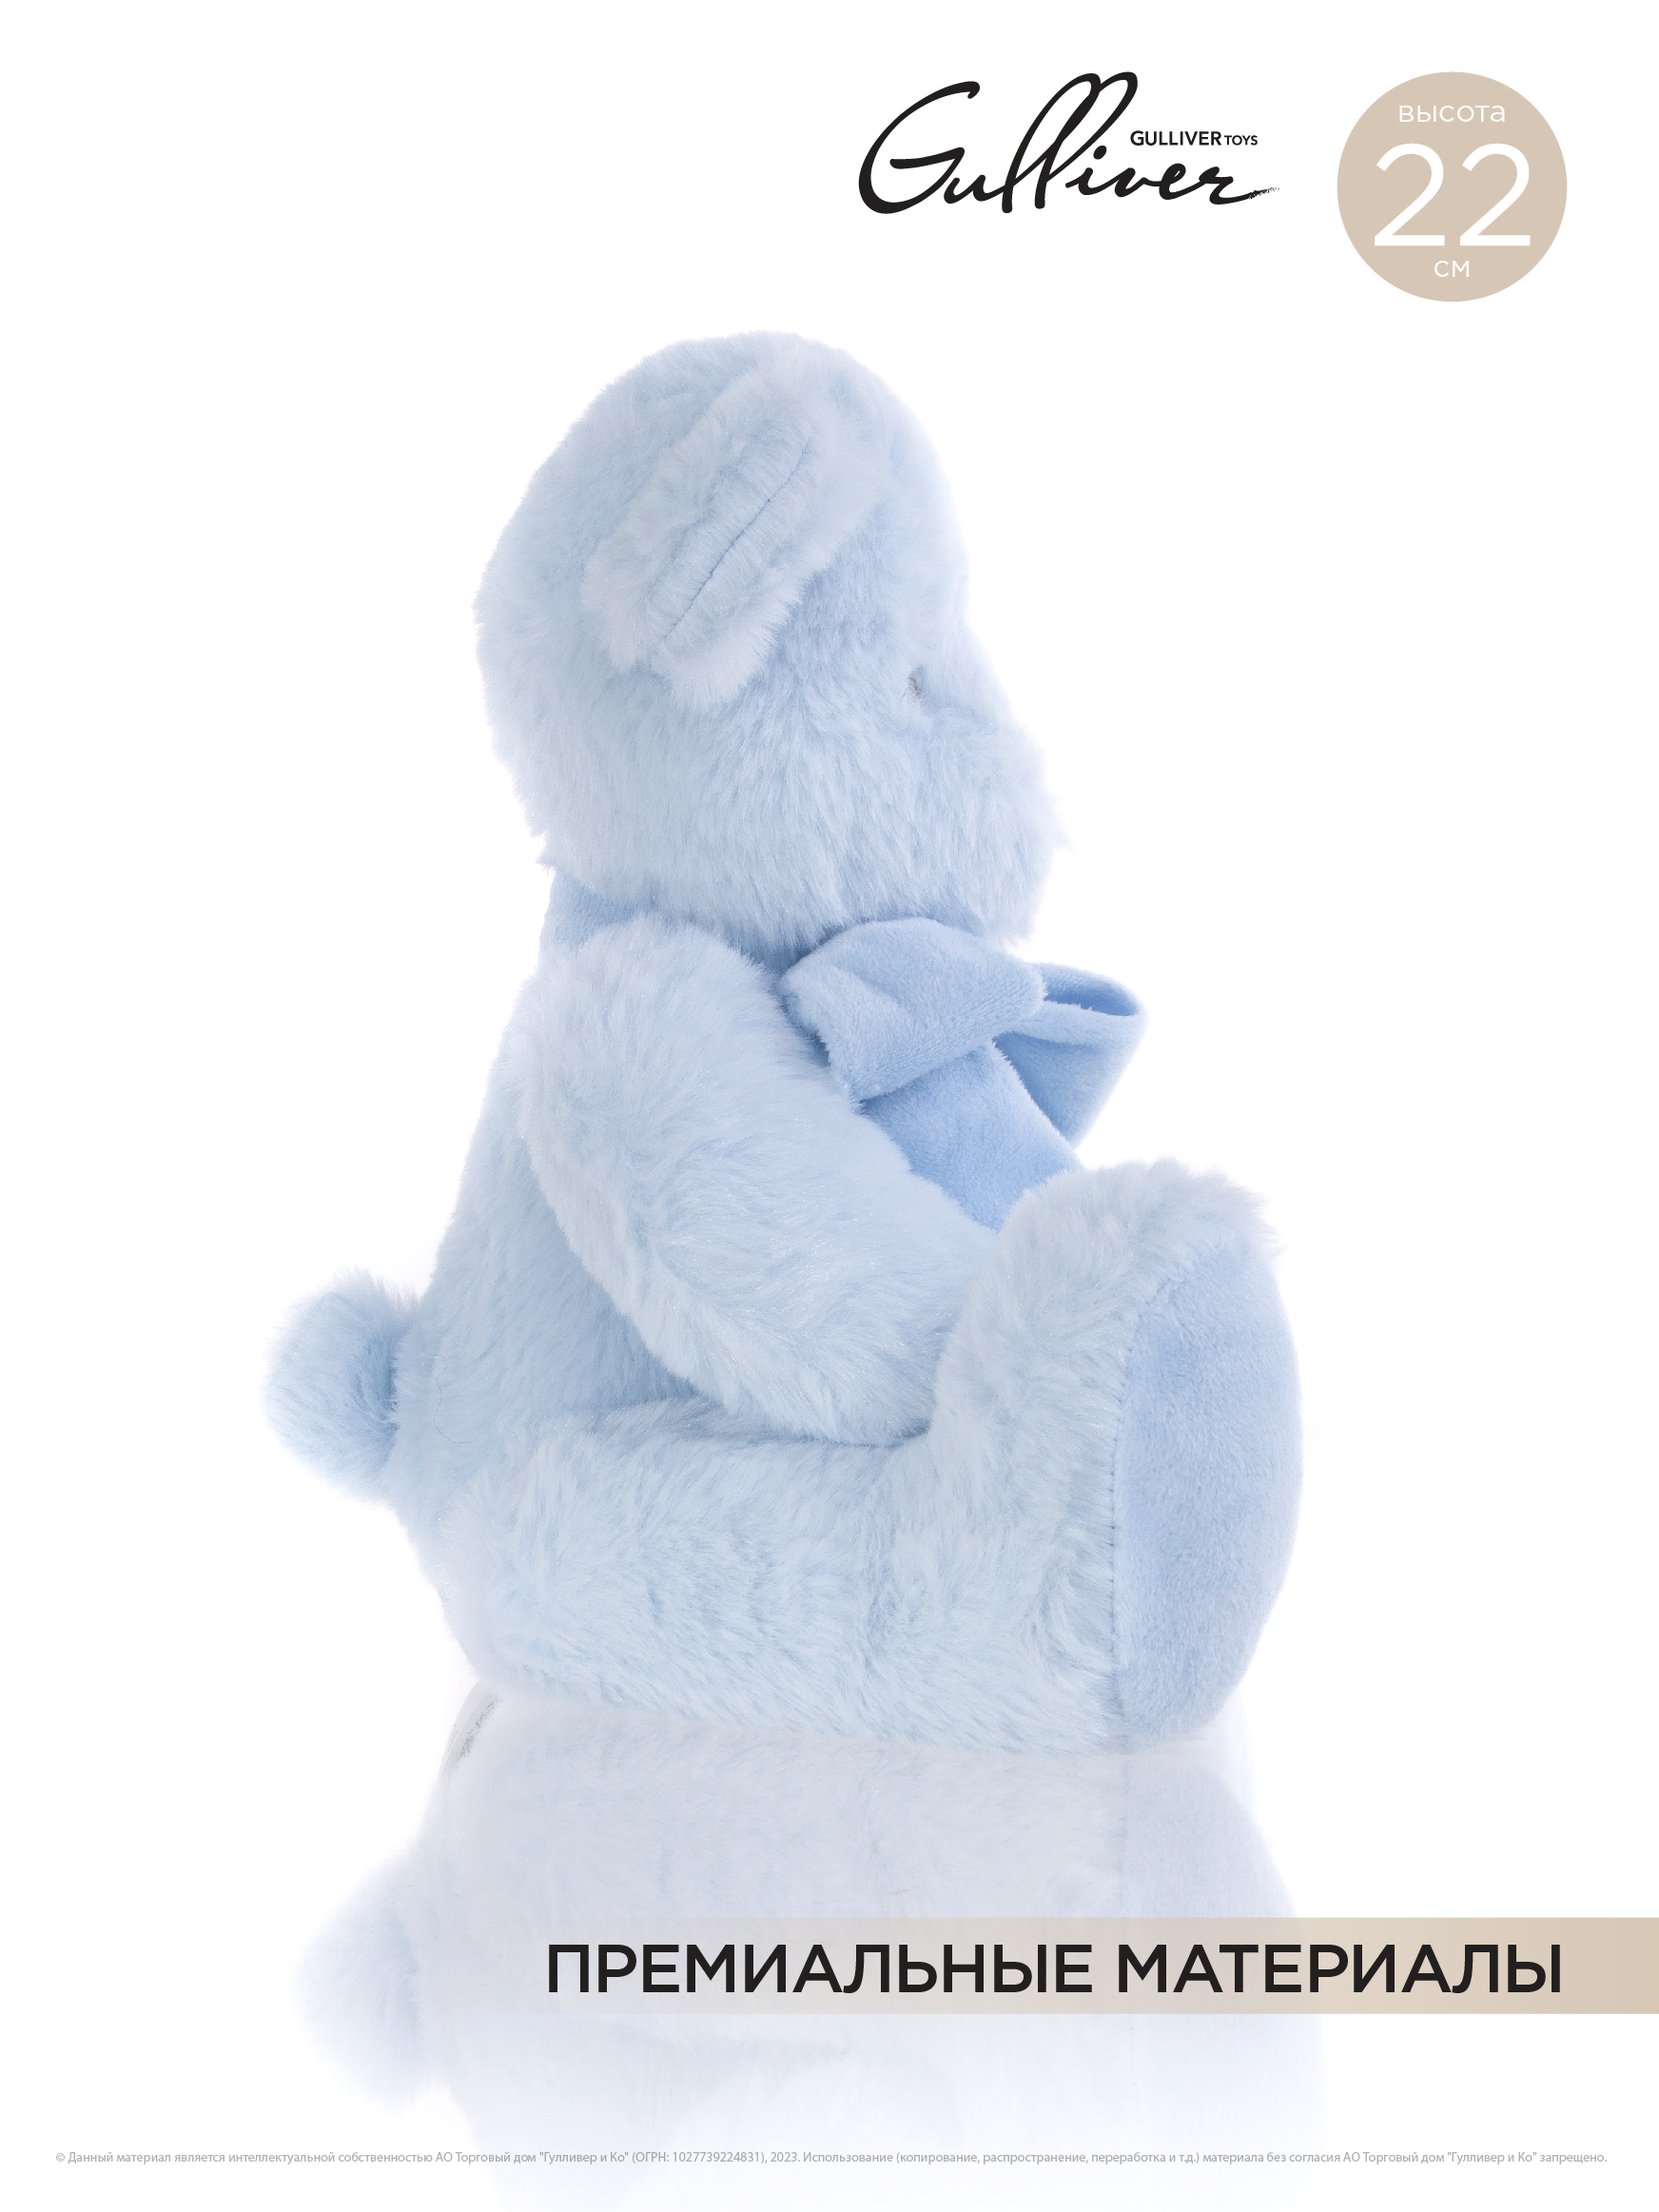 Мягкая игрушка GULLIVER Мишка голубой сидячий с бантом 22 см - фото 2